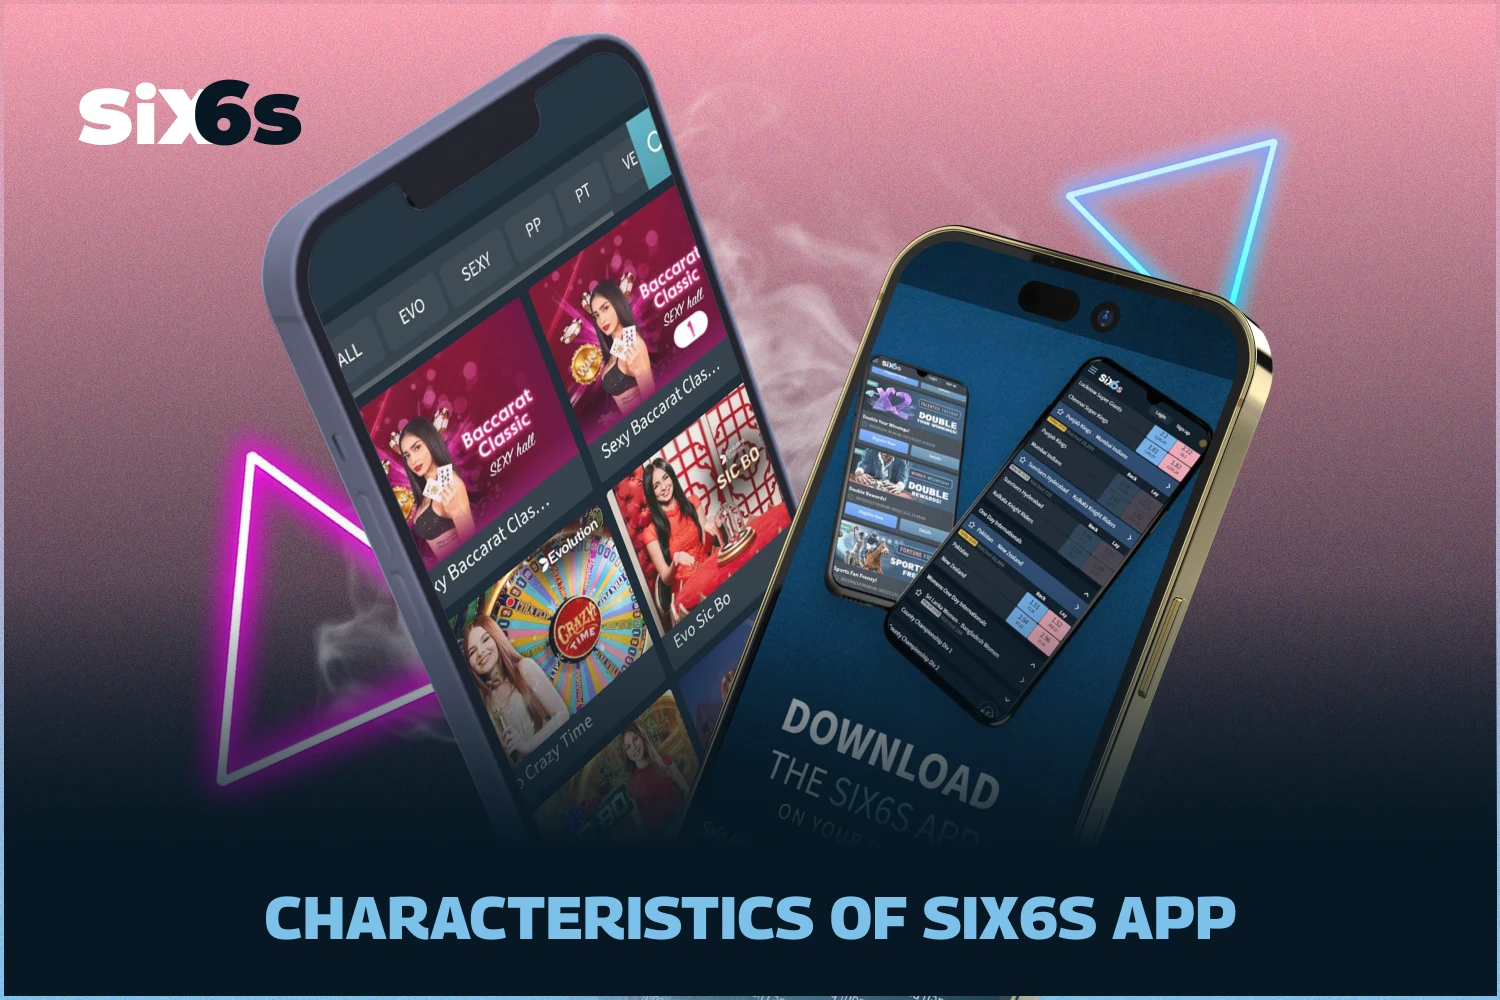 Six6s ऐप की रेटिंग बहुत अच्छी है और यह बांग्लादेश के उपयोगकर्ताओं को खेल सट्टेबाजी और कैसीनो गेम तक त्वरित पहुंच प्रदान करता है